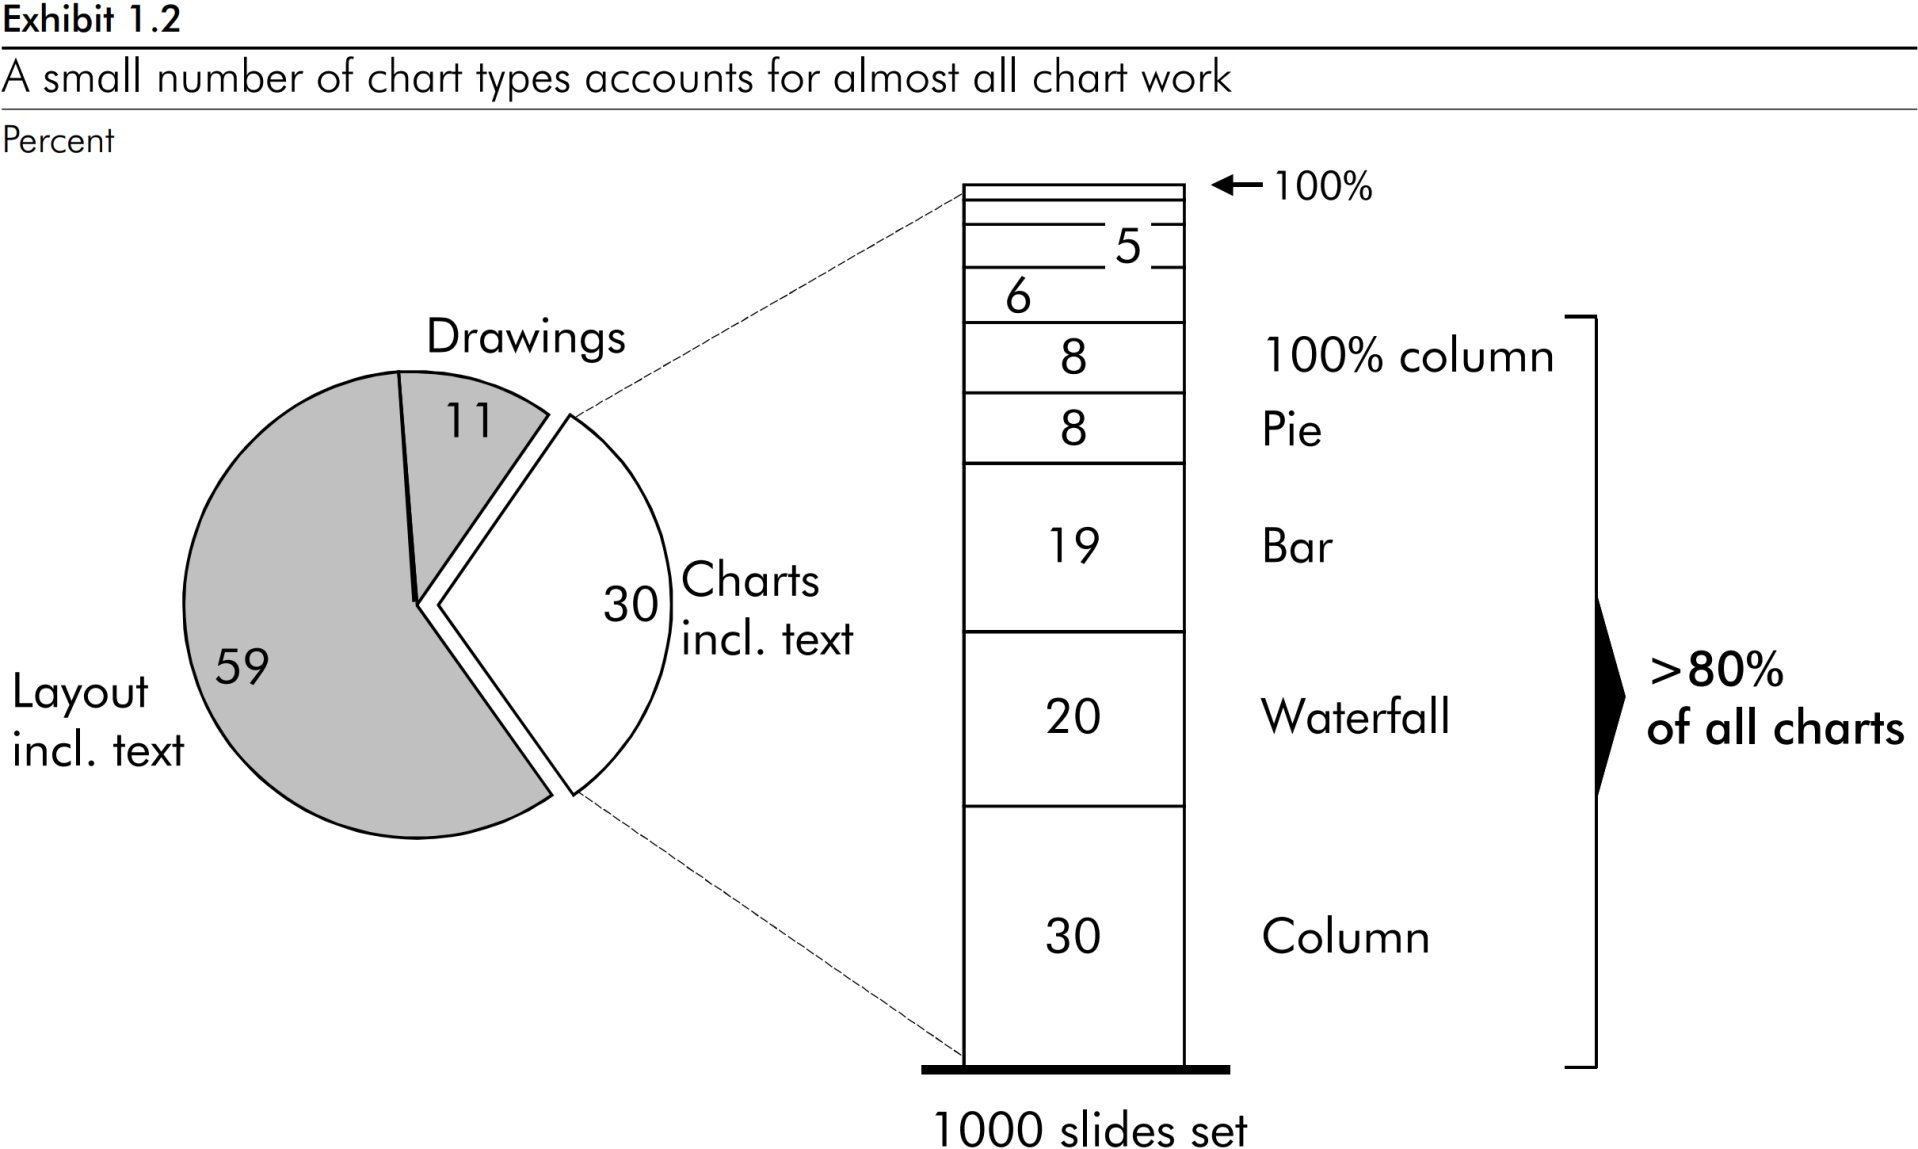 以下饼图显示出所有图表制作工作的 85% 仅针对 5 种图表类型：百分比柱形图、饼图、条形图、瀑布图和柱形图.